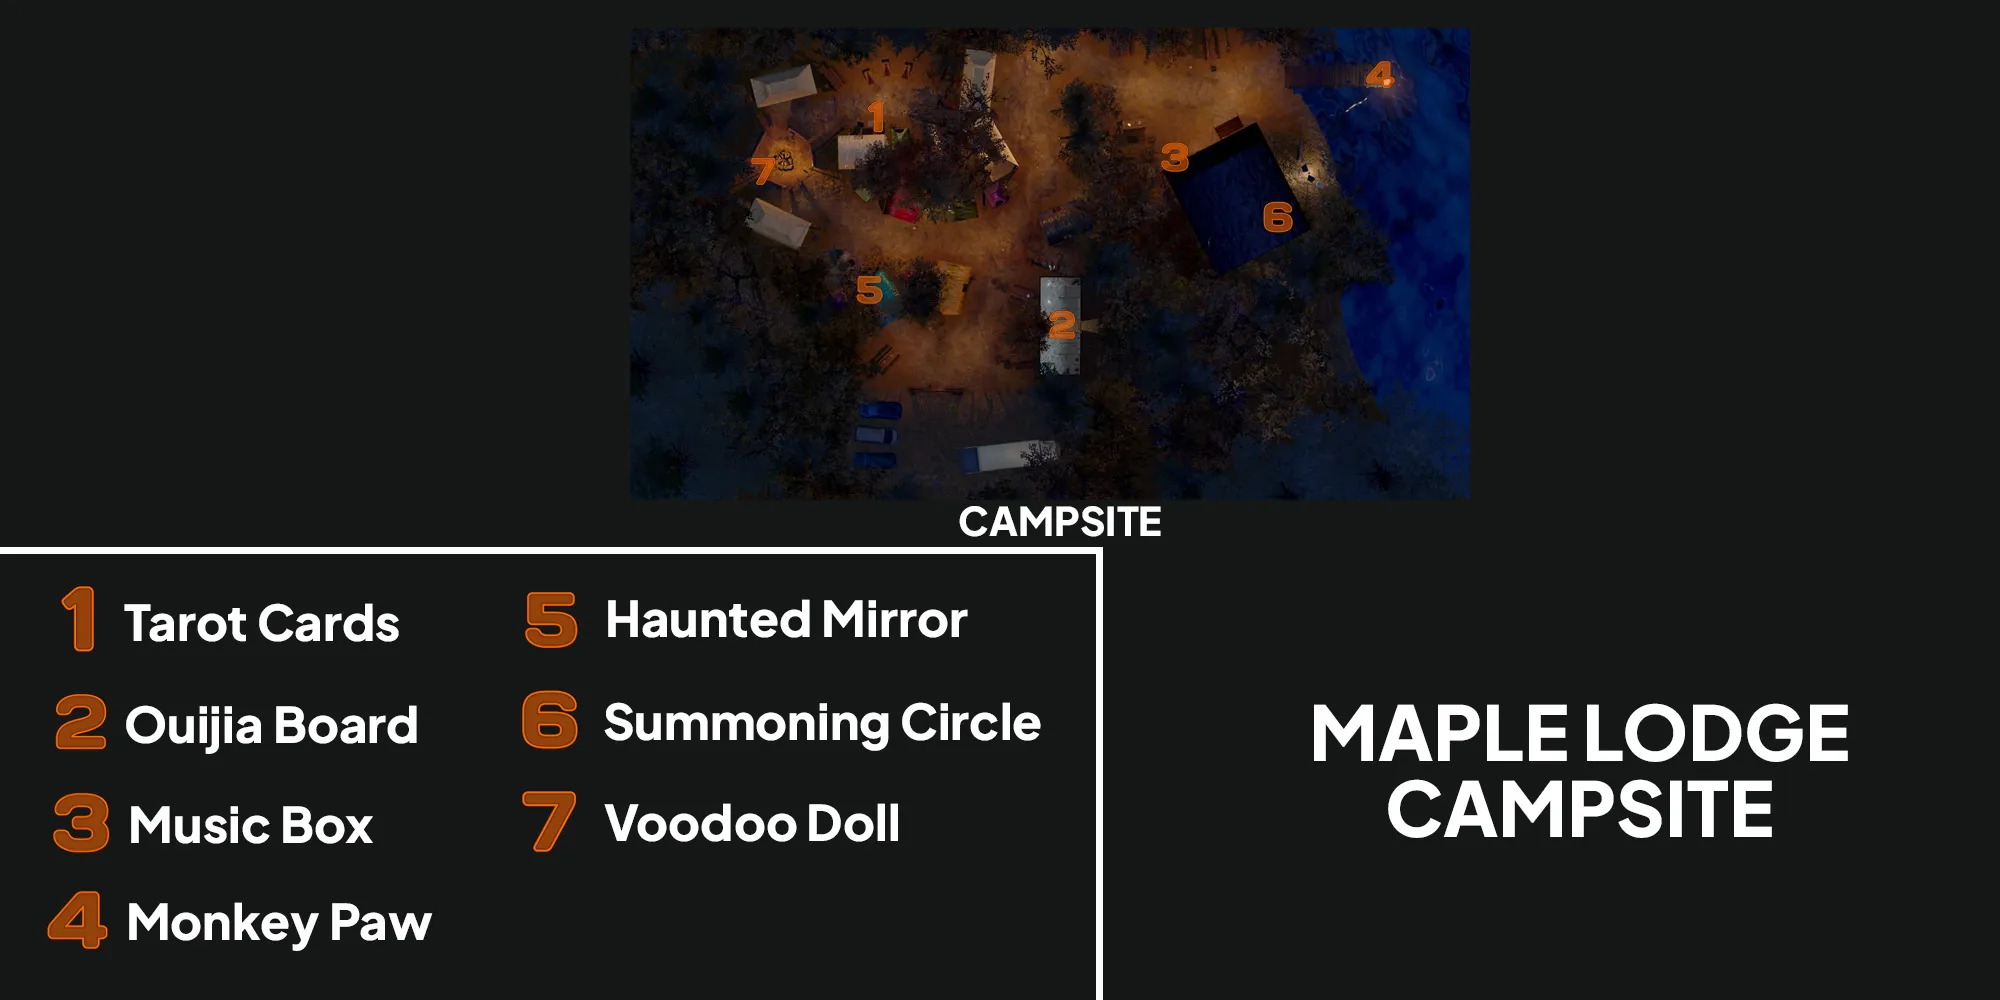 图片展示了Phasmophobia中枫树小屋露营地的地图，橙色数字显示了七个诅咒物品的位置。